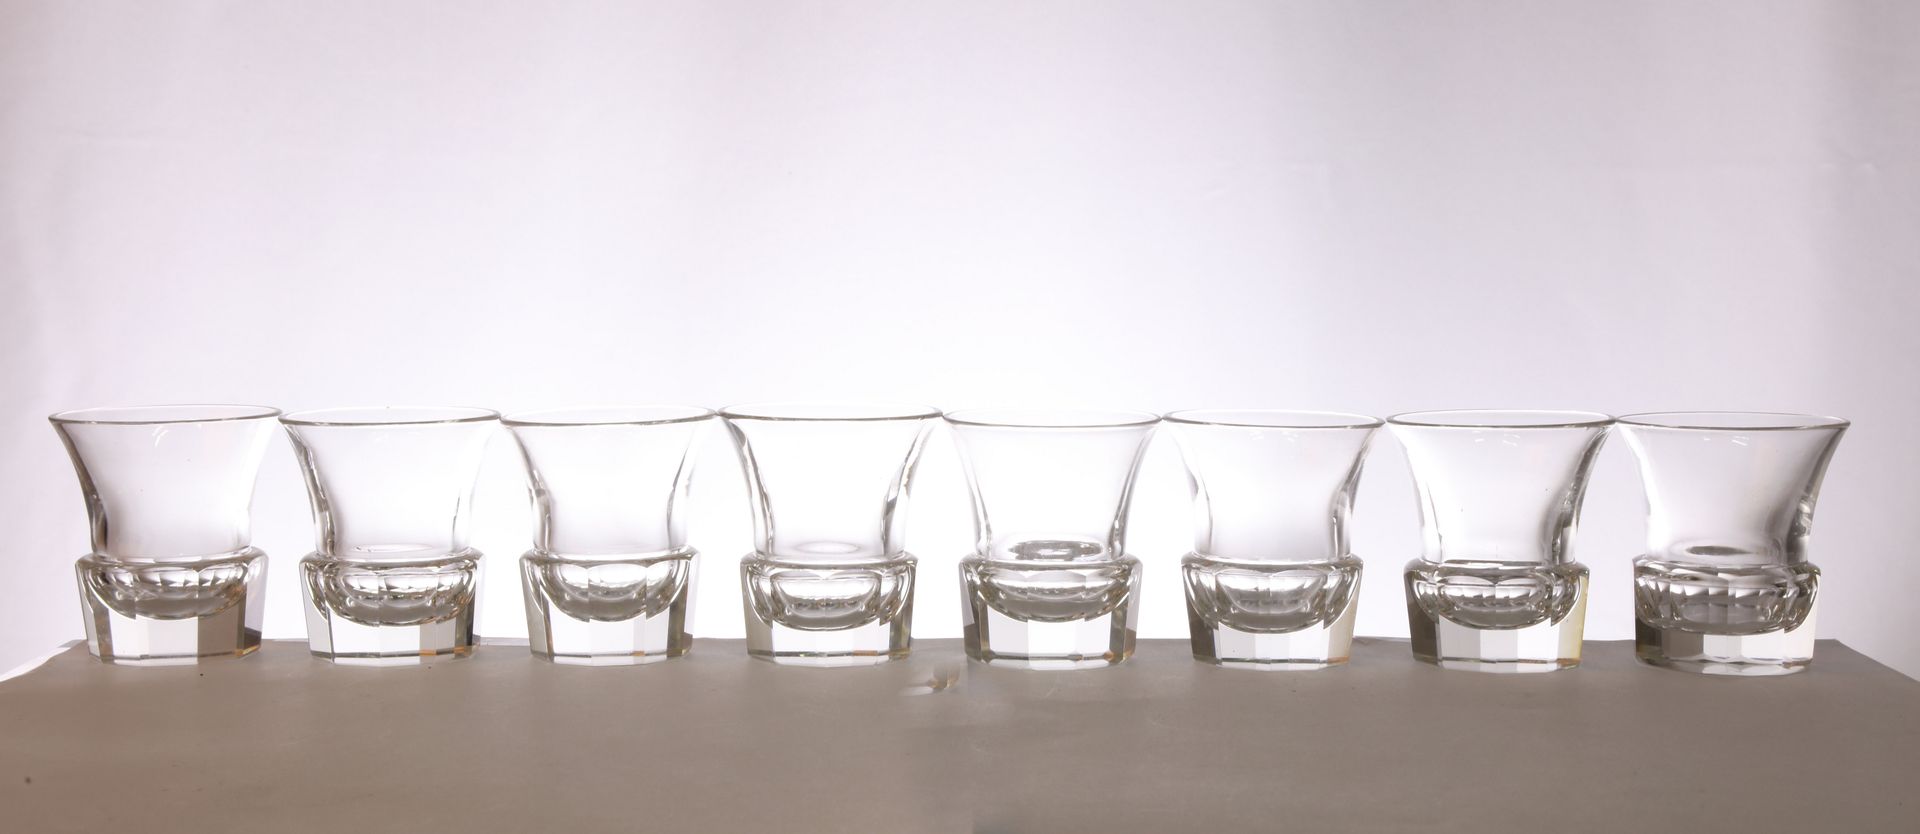 Null Suite von 8 Wodkagläsern aus Kristall, Basis geschliffen, ausgestellter Ran&hellip;